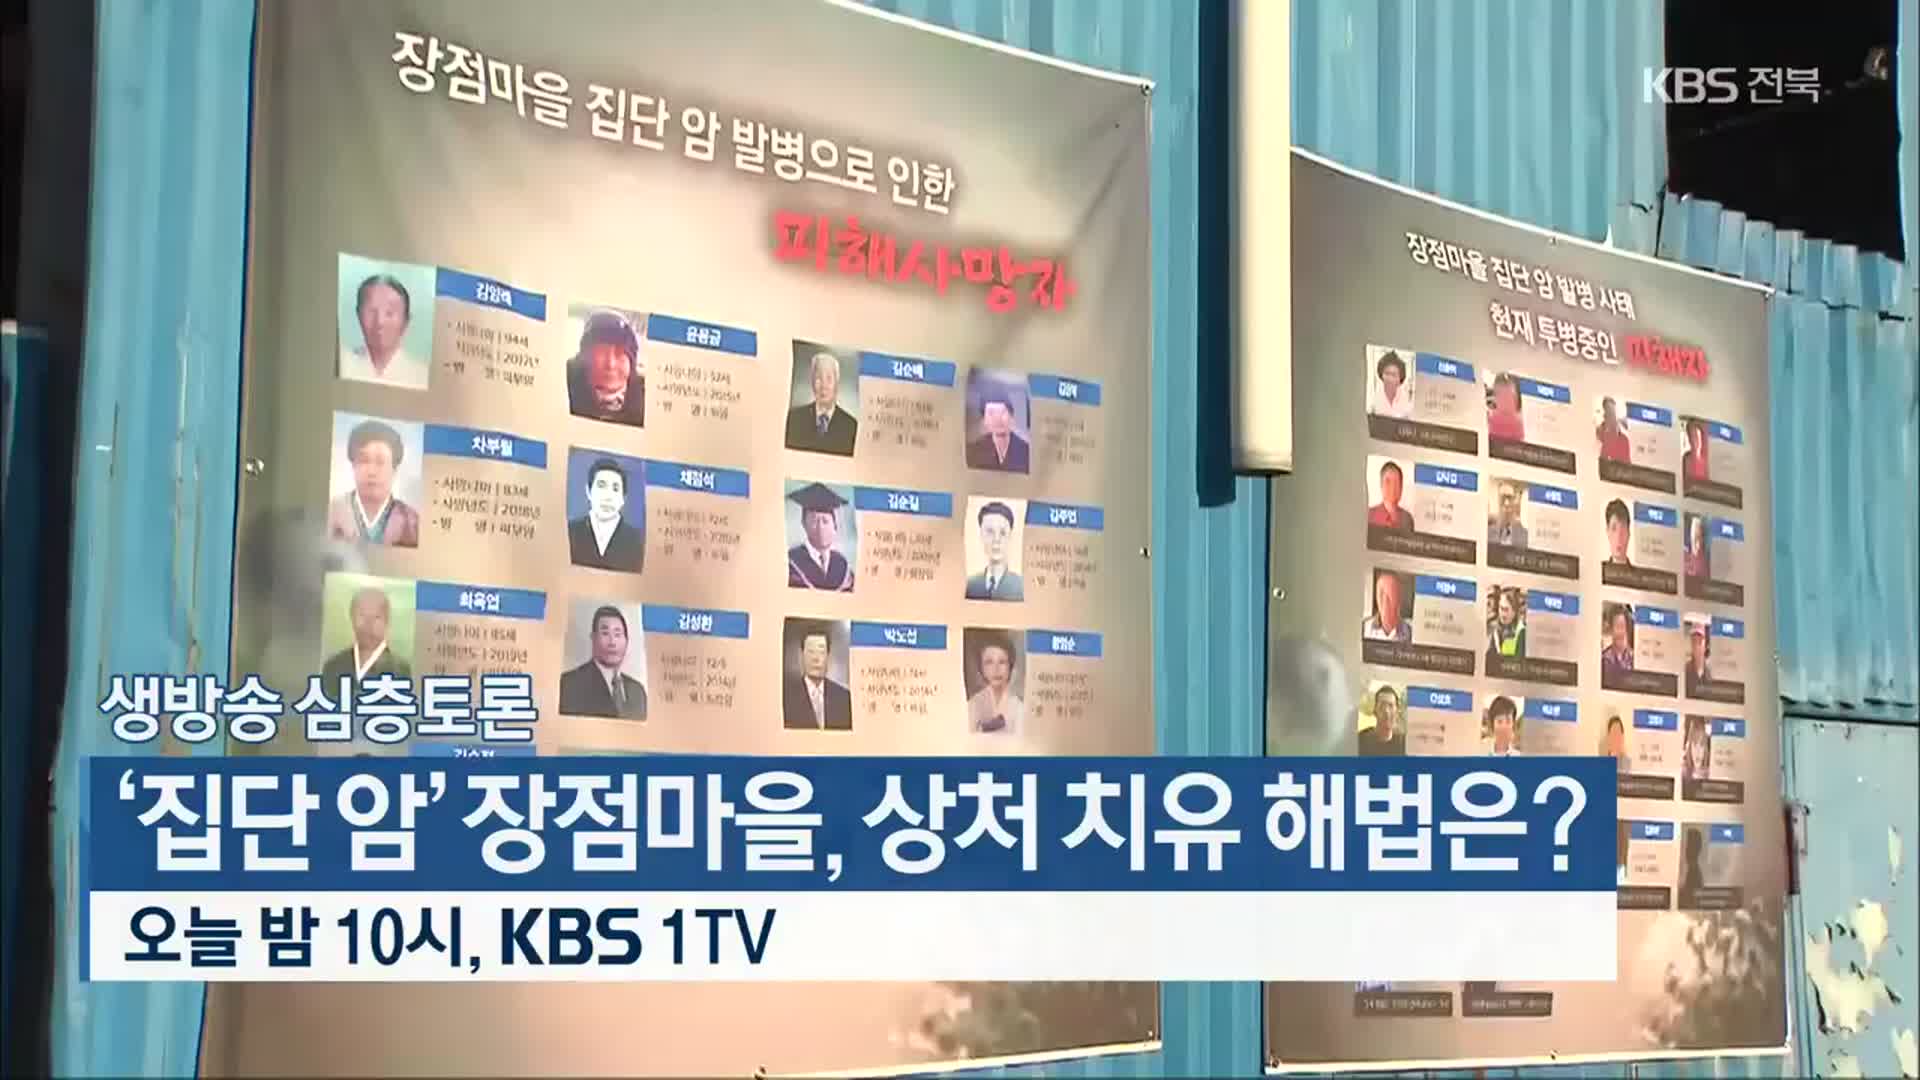 [생방송 심층토론] ‘집단 암’ 장점마을, 상처 치유 해법은? 오늘 밤 10시, KBS 1TV